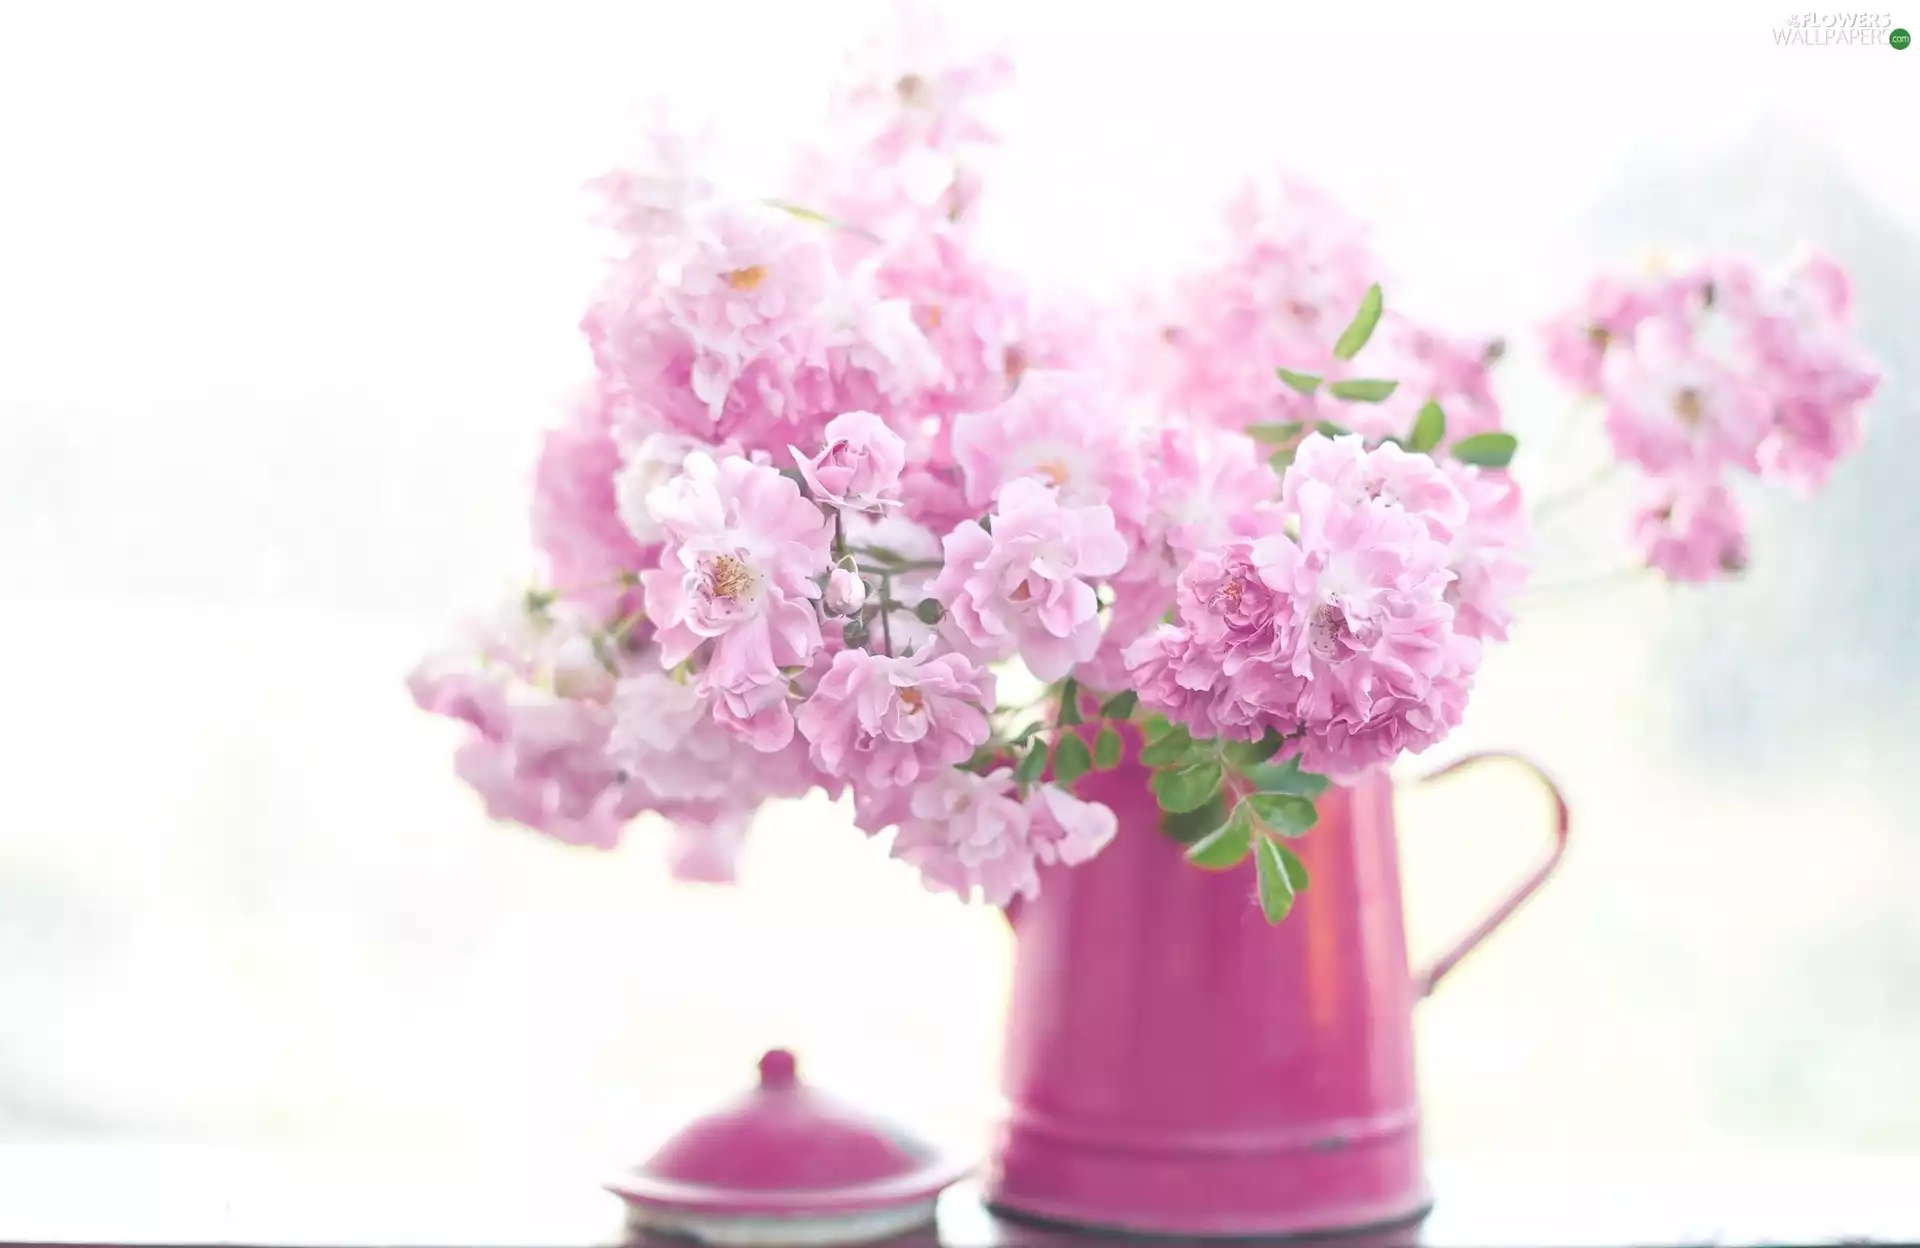 jug, Pink, Flowers